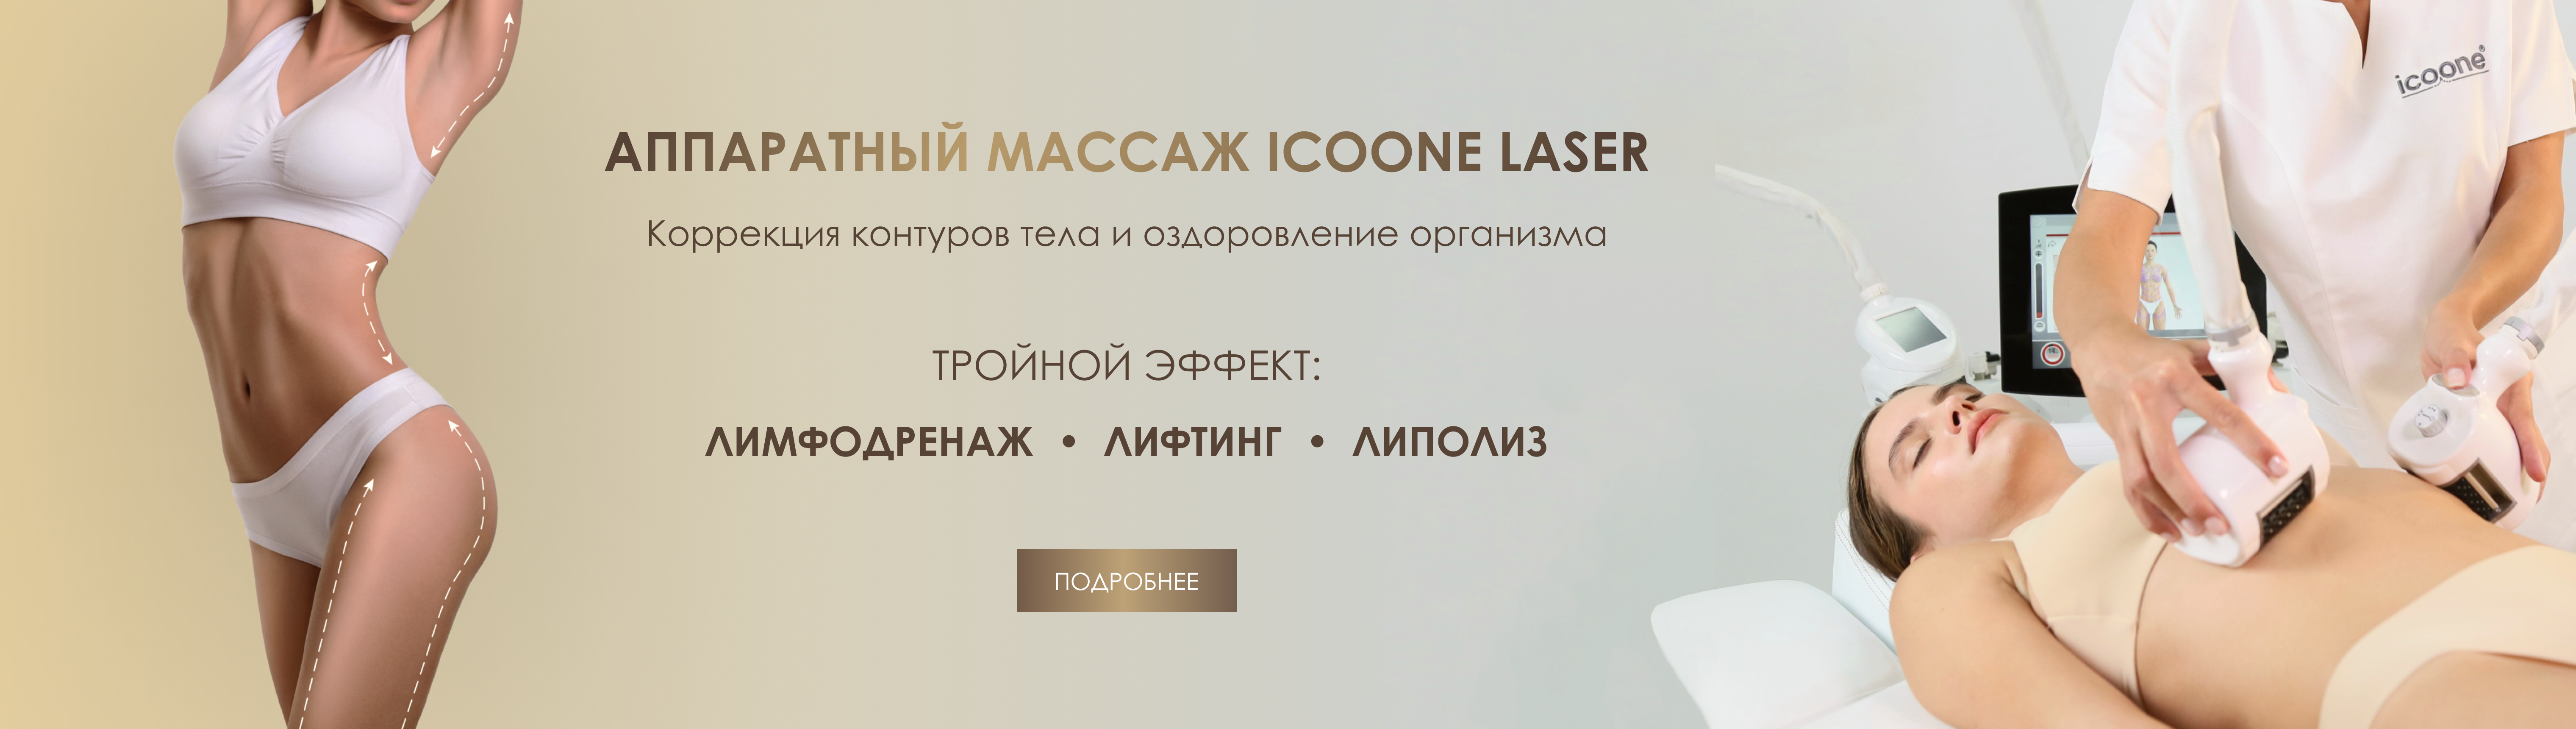 Аппаратный массаж icoone laser